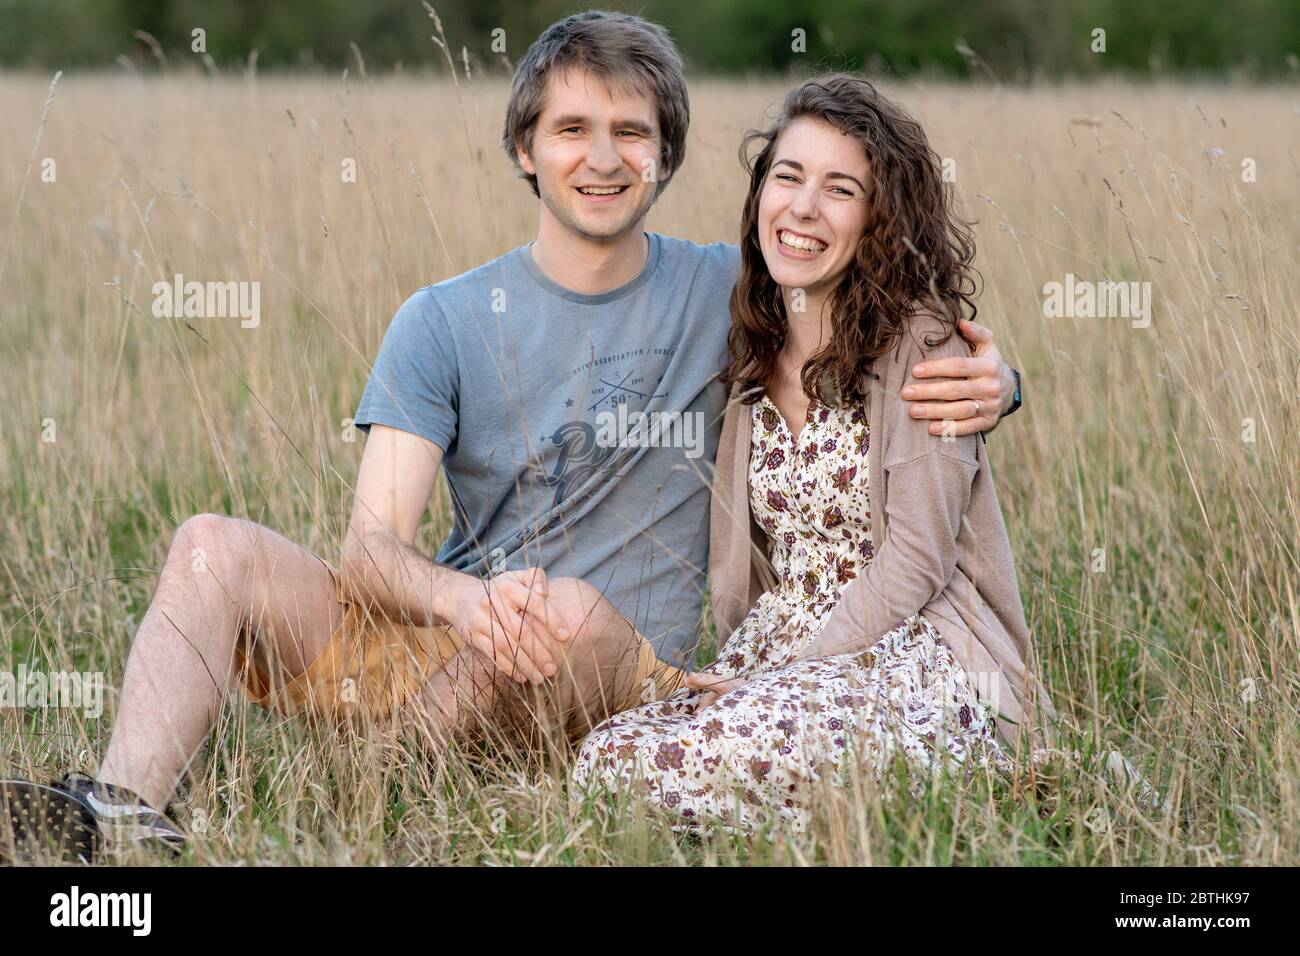 Un jeune beau couple séduisant sourire ensemble dans un beau champ extérieur montrant leur amour pour les uns les autres et embrassant Banque D'Images